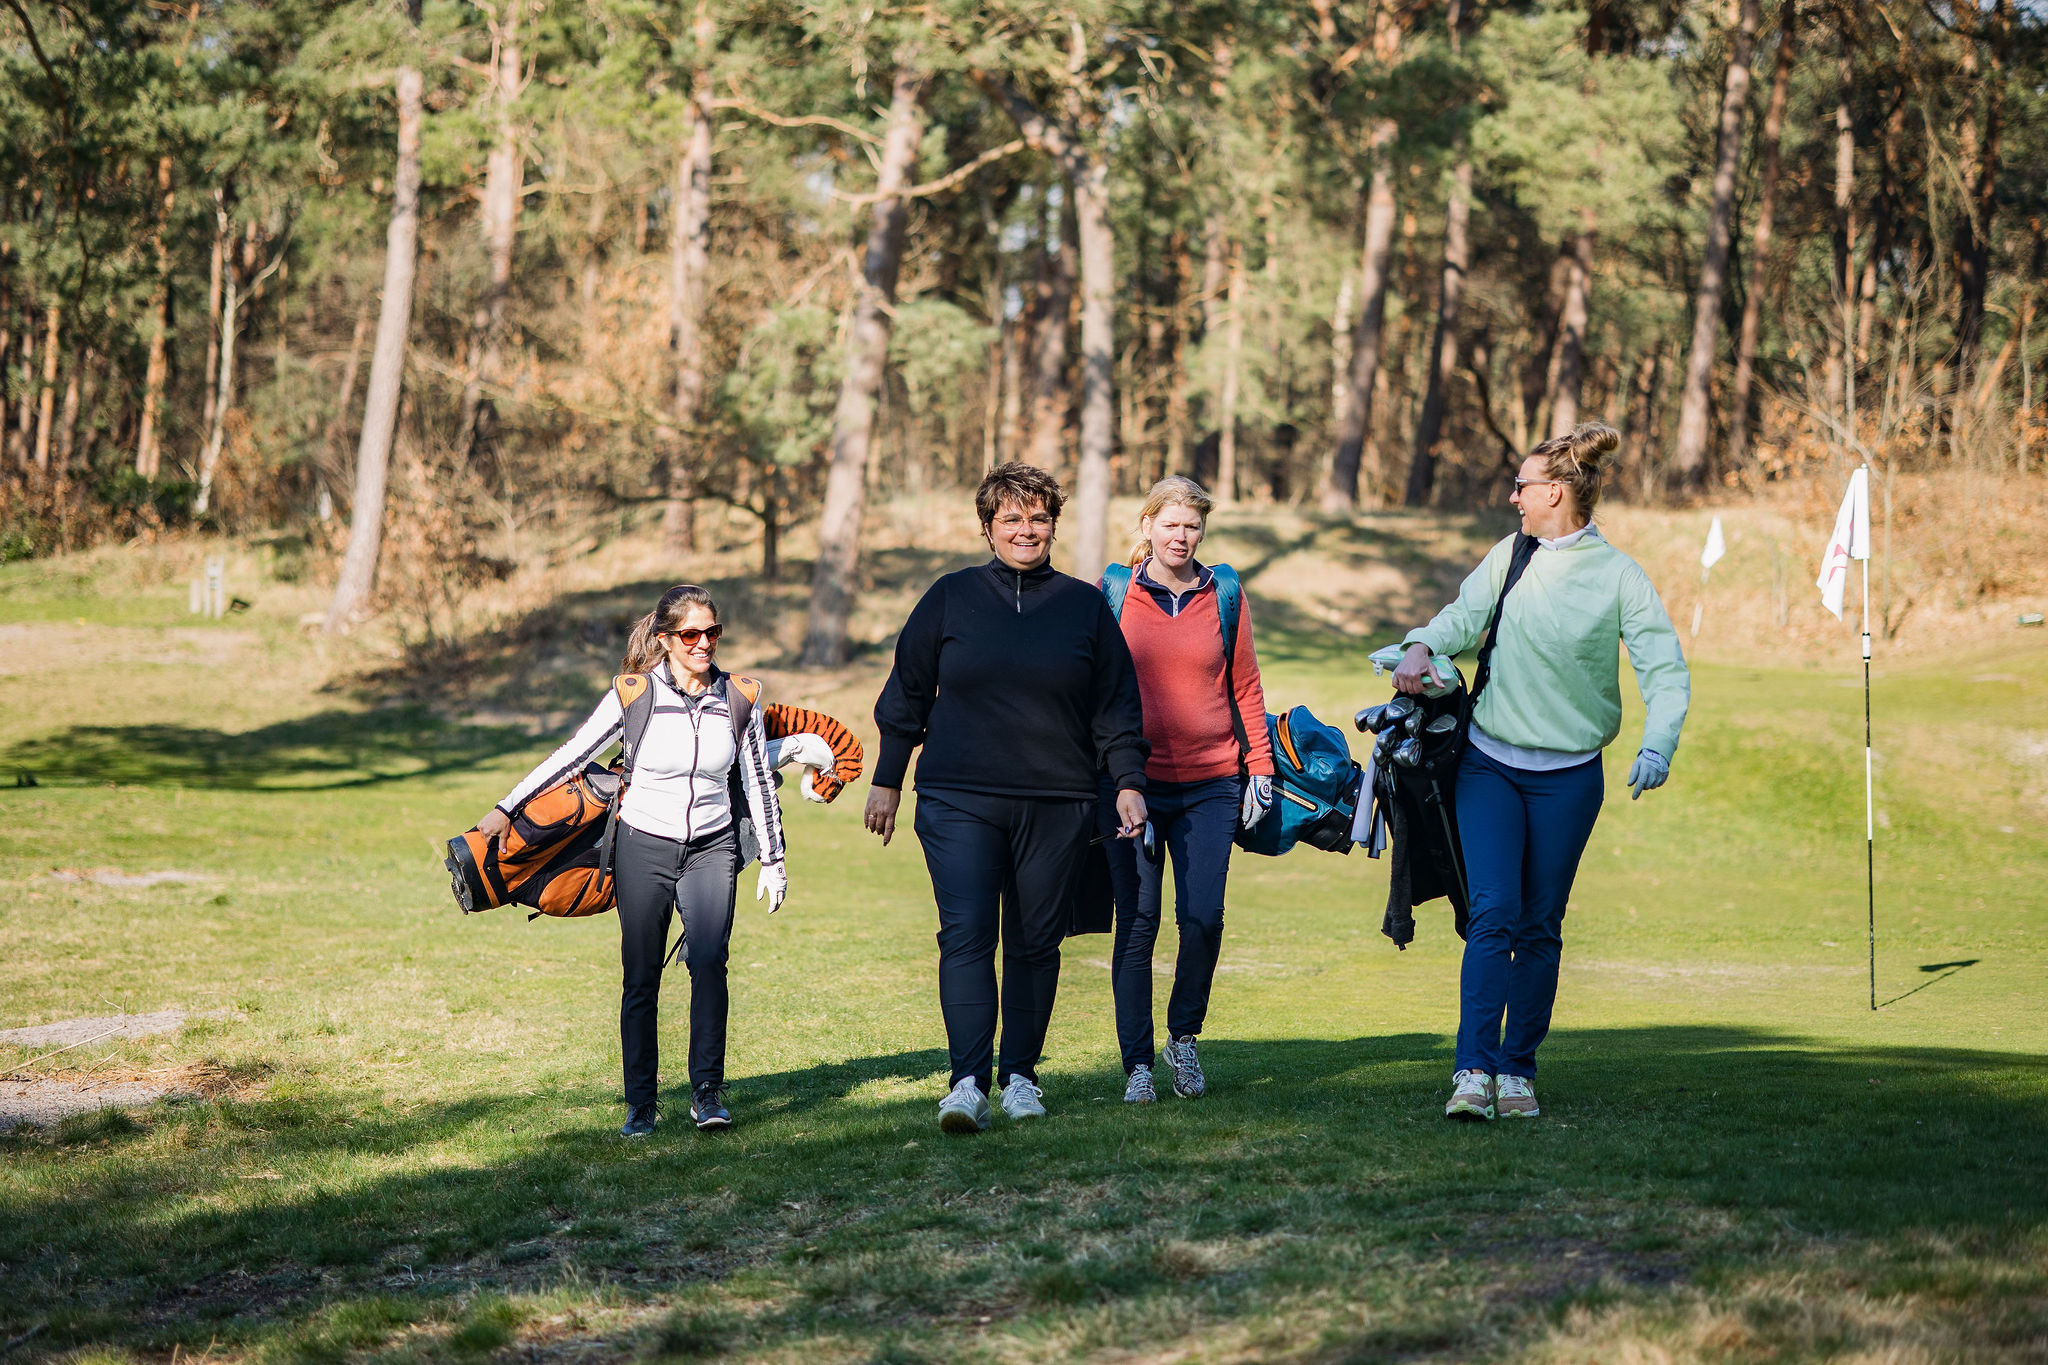 Golf voor vrouwen: succesvolle pilot 'First Dates' door NVG en NGF